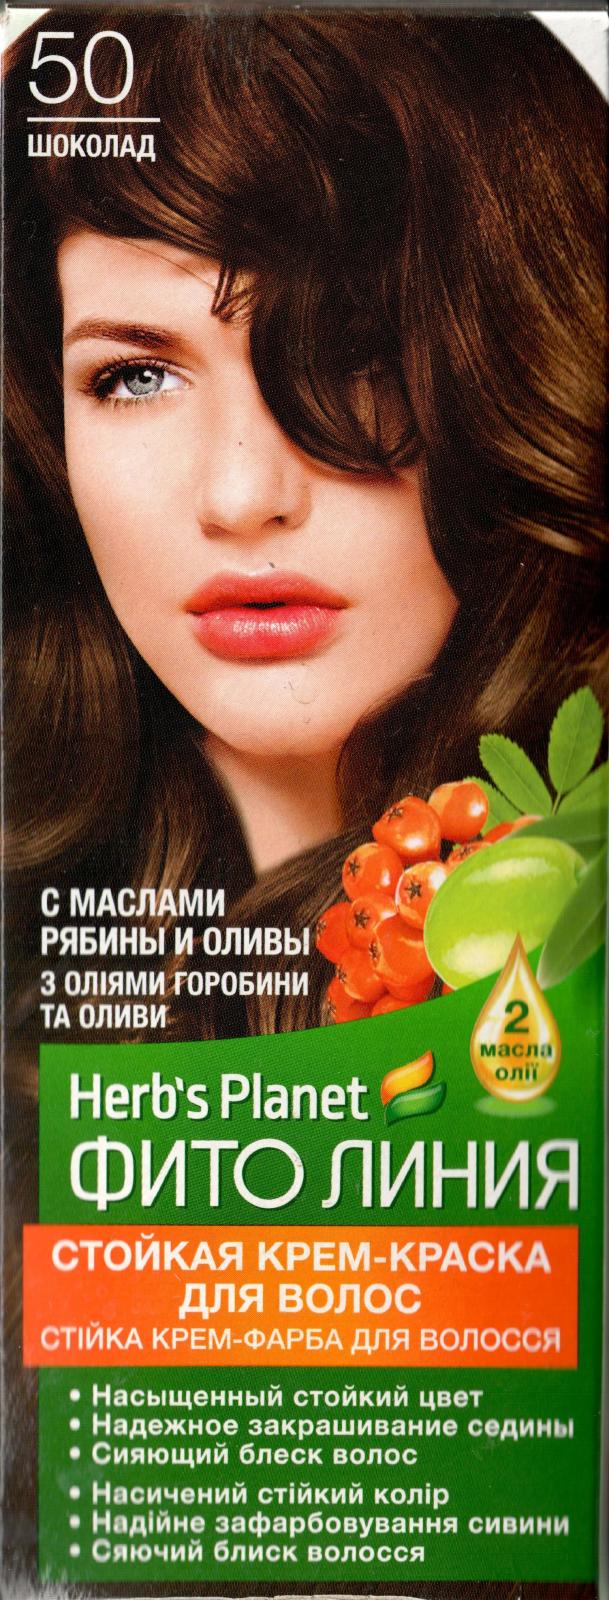 Стойкая крем-краска для волос "Фито линия Herb's Planet" тон 50 Шоколад